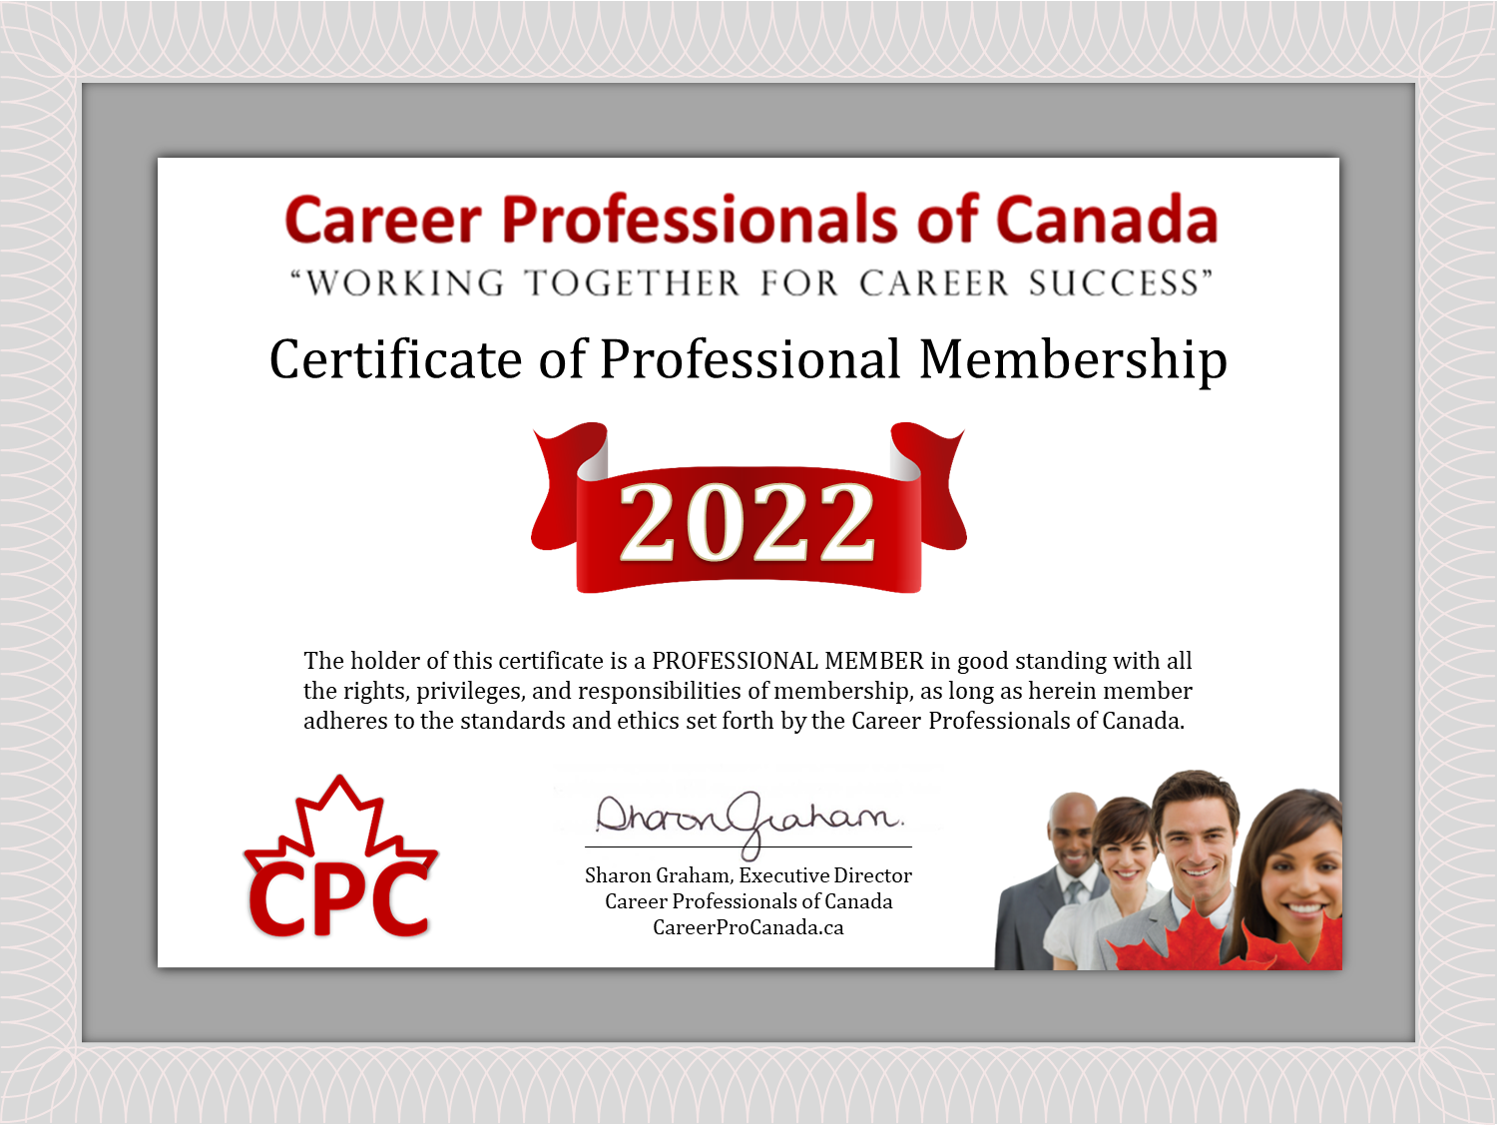 Career Professionals of Canada - Certificate of Professional Membership 2022